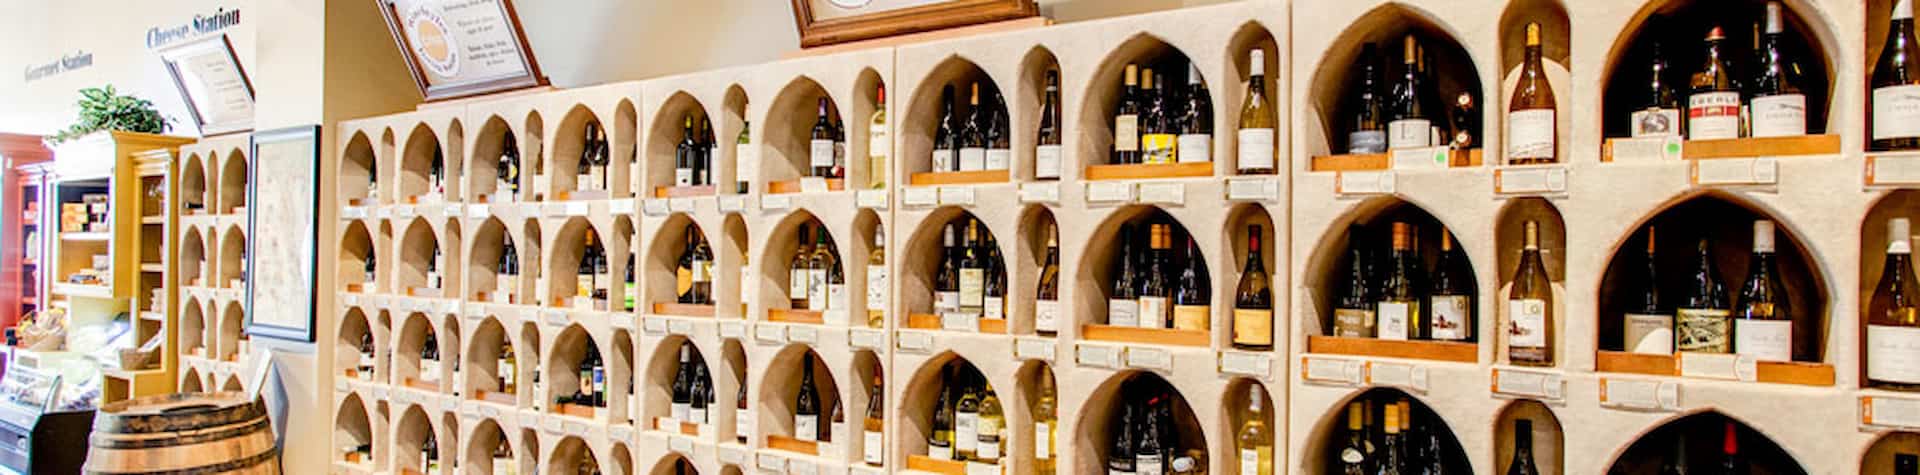 wall of wine inside